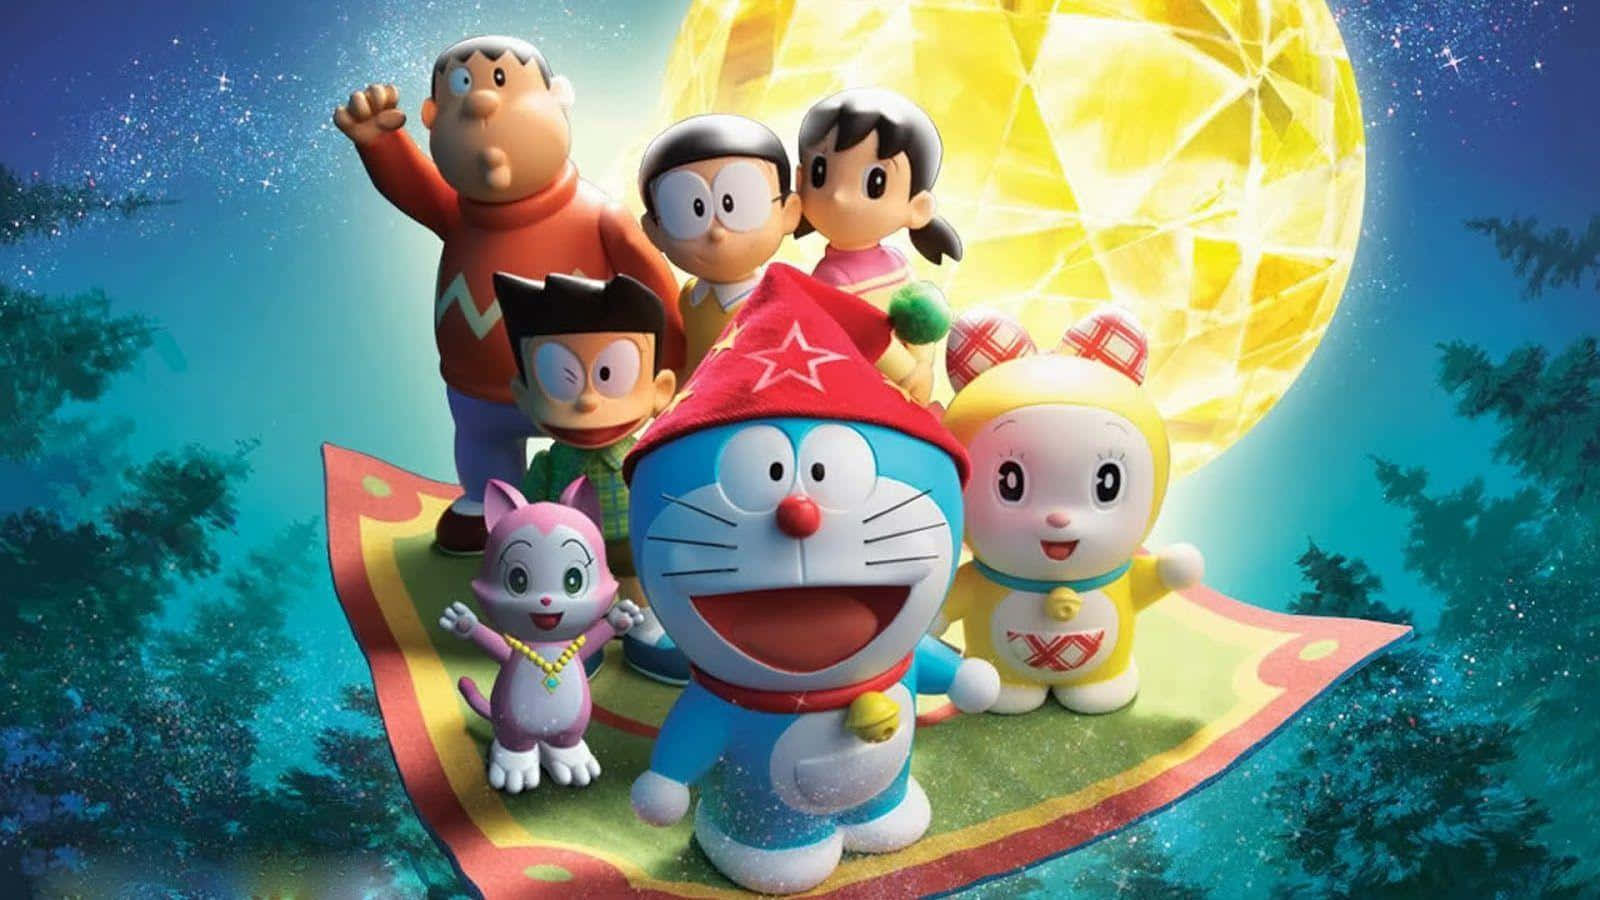 Doraemontraz Lições De Vida Através De Sua Criatividade De Coração Caloroso.